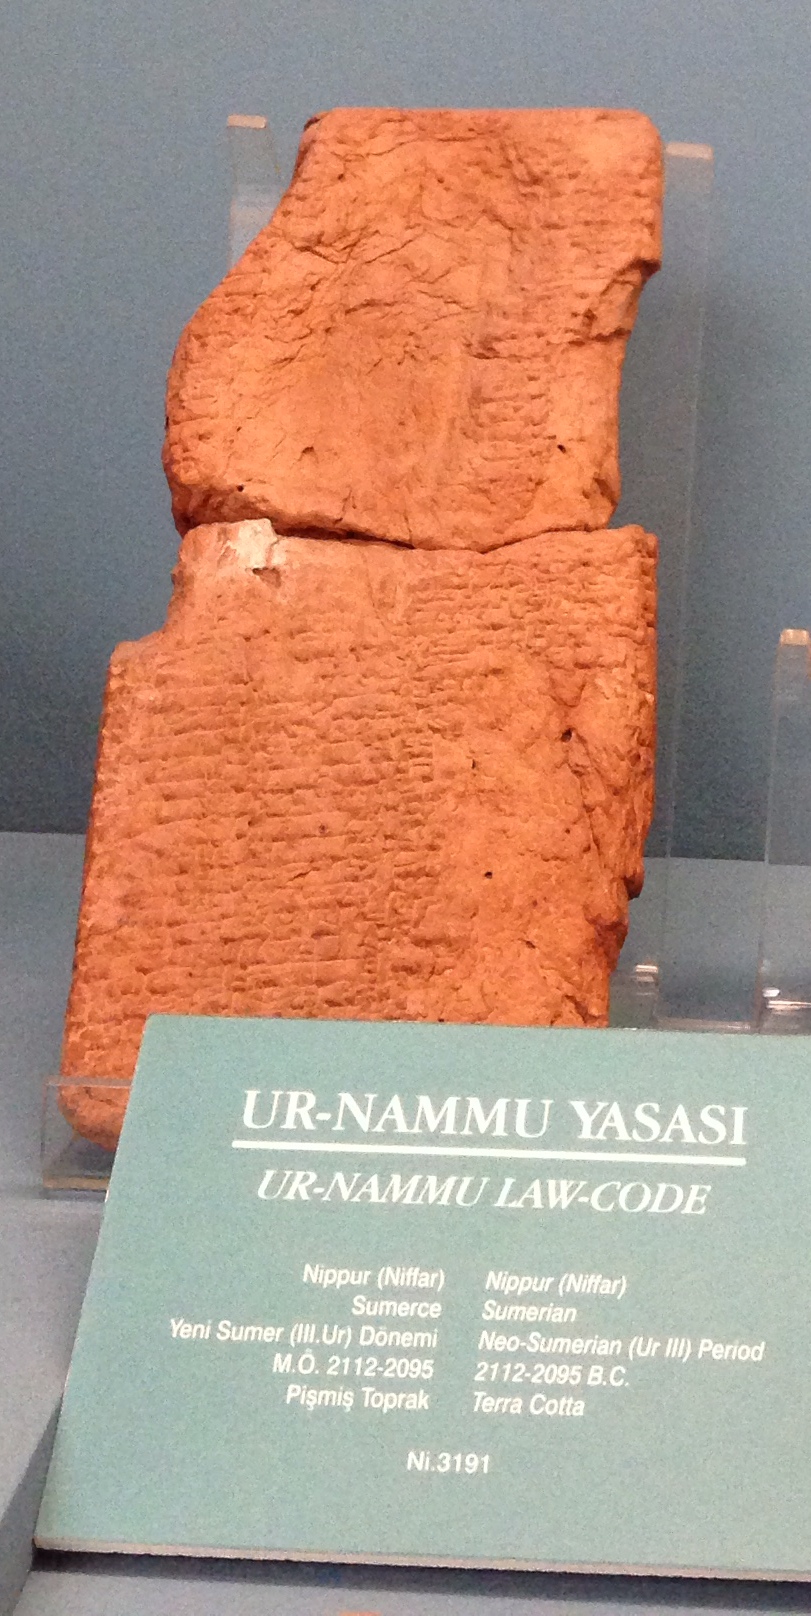 Свод законов шумерского царя Ур-Намму считается старейшей писаной конституцией в мире&nbsp;&mdash; возраст глиняных табличек превышает 4 тыс. лет